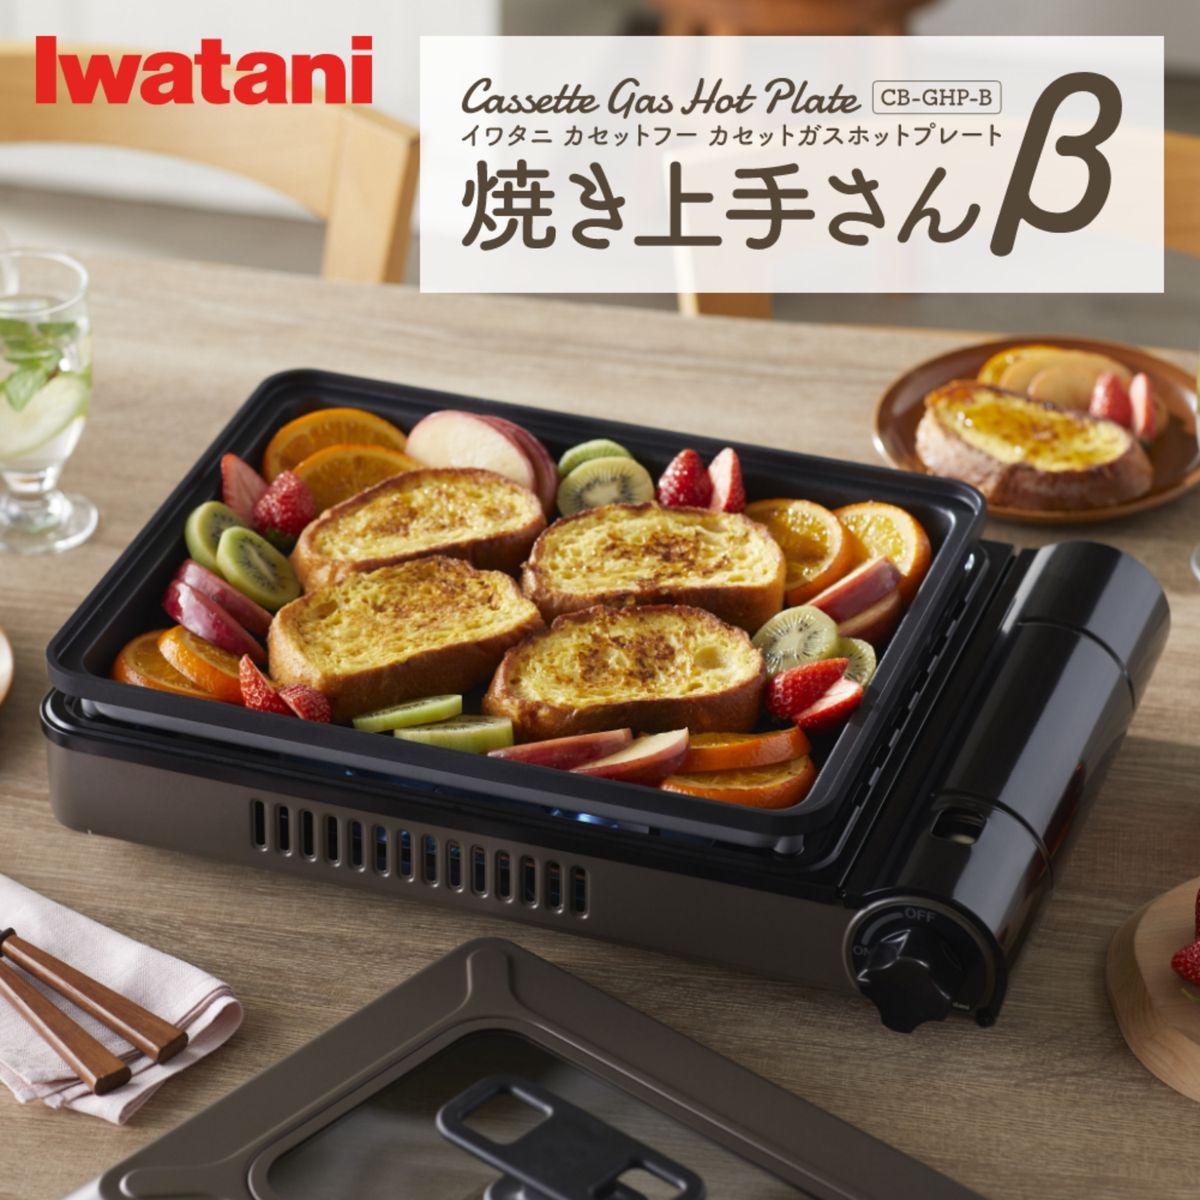 イワタニ iwatani カセットガスホットプレート 焼き上手さんβ カセットコンロ